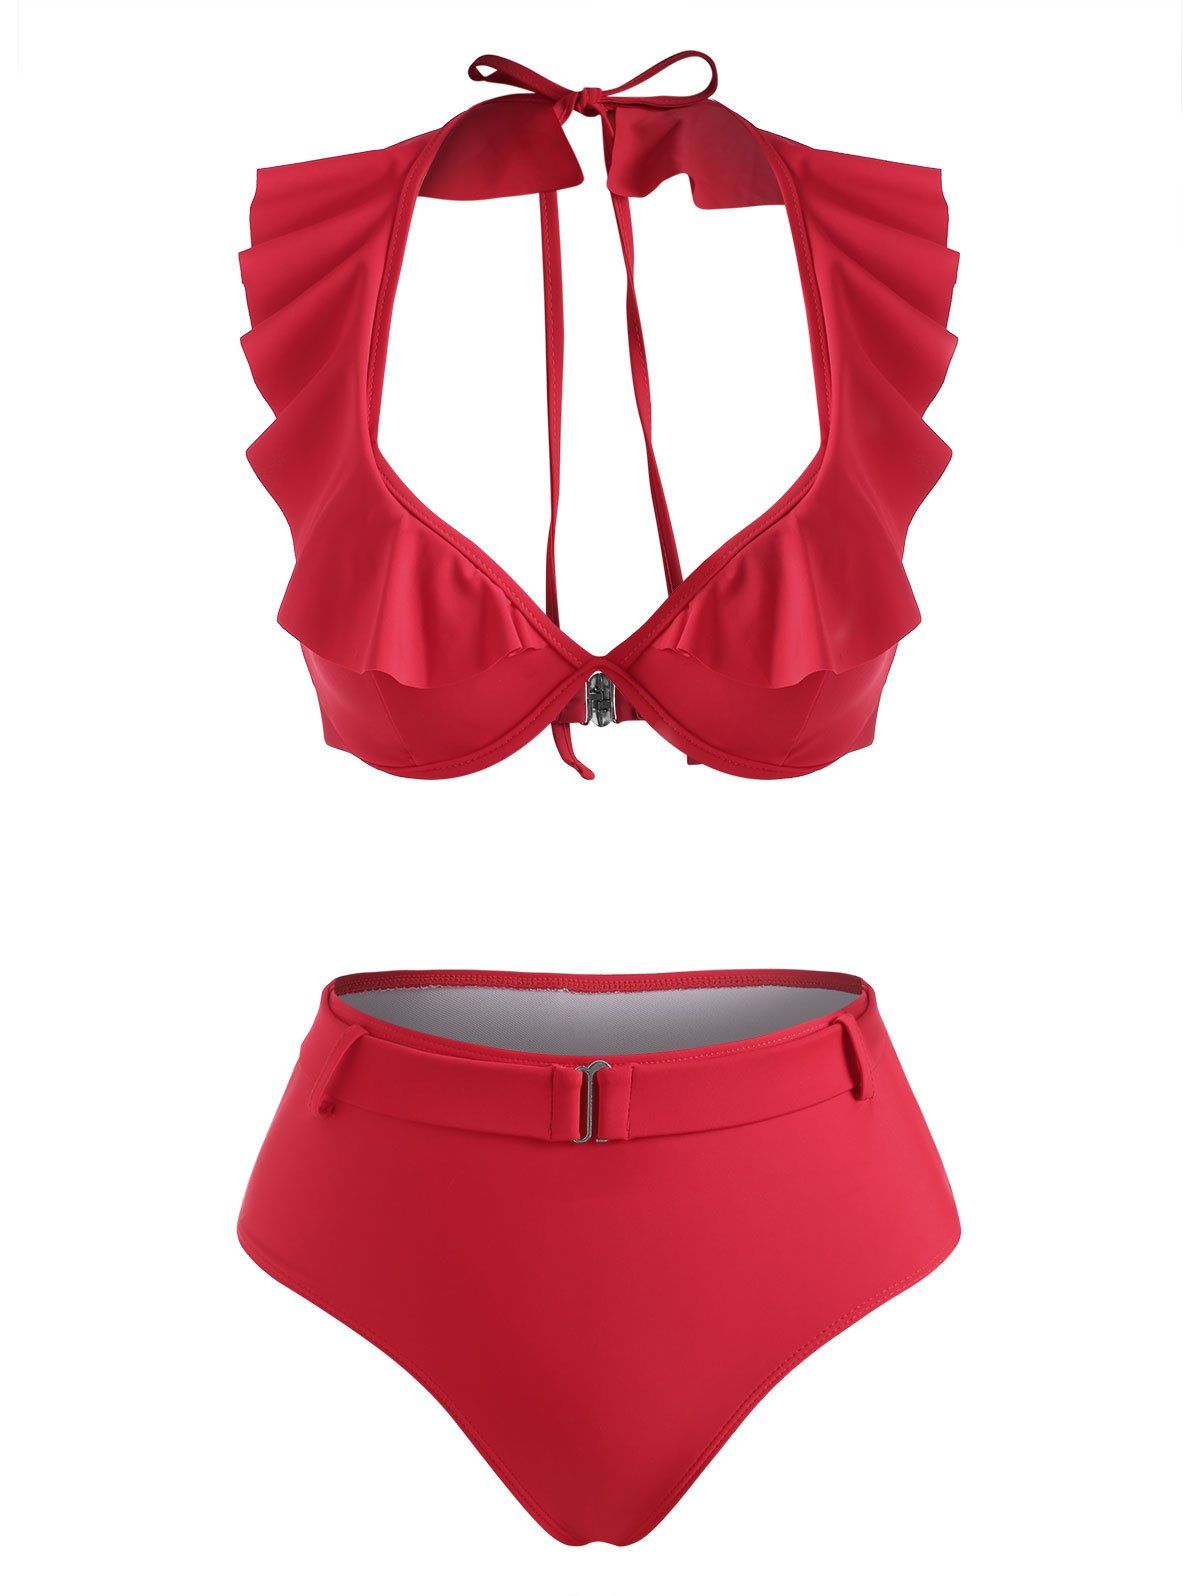 Halter Ruffle Monowire Belted Bikini Swimwear - RED M